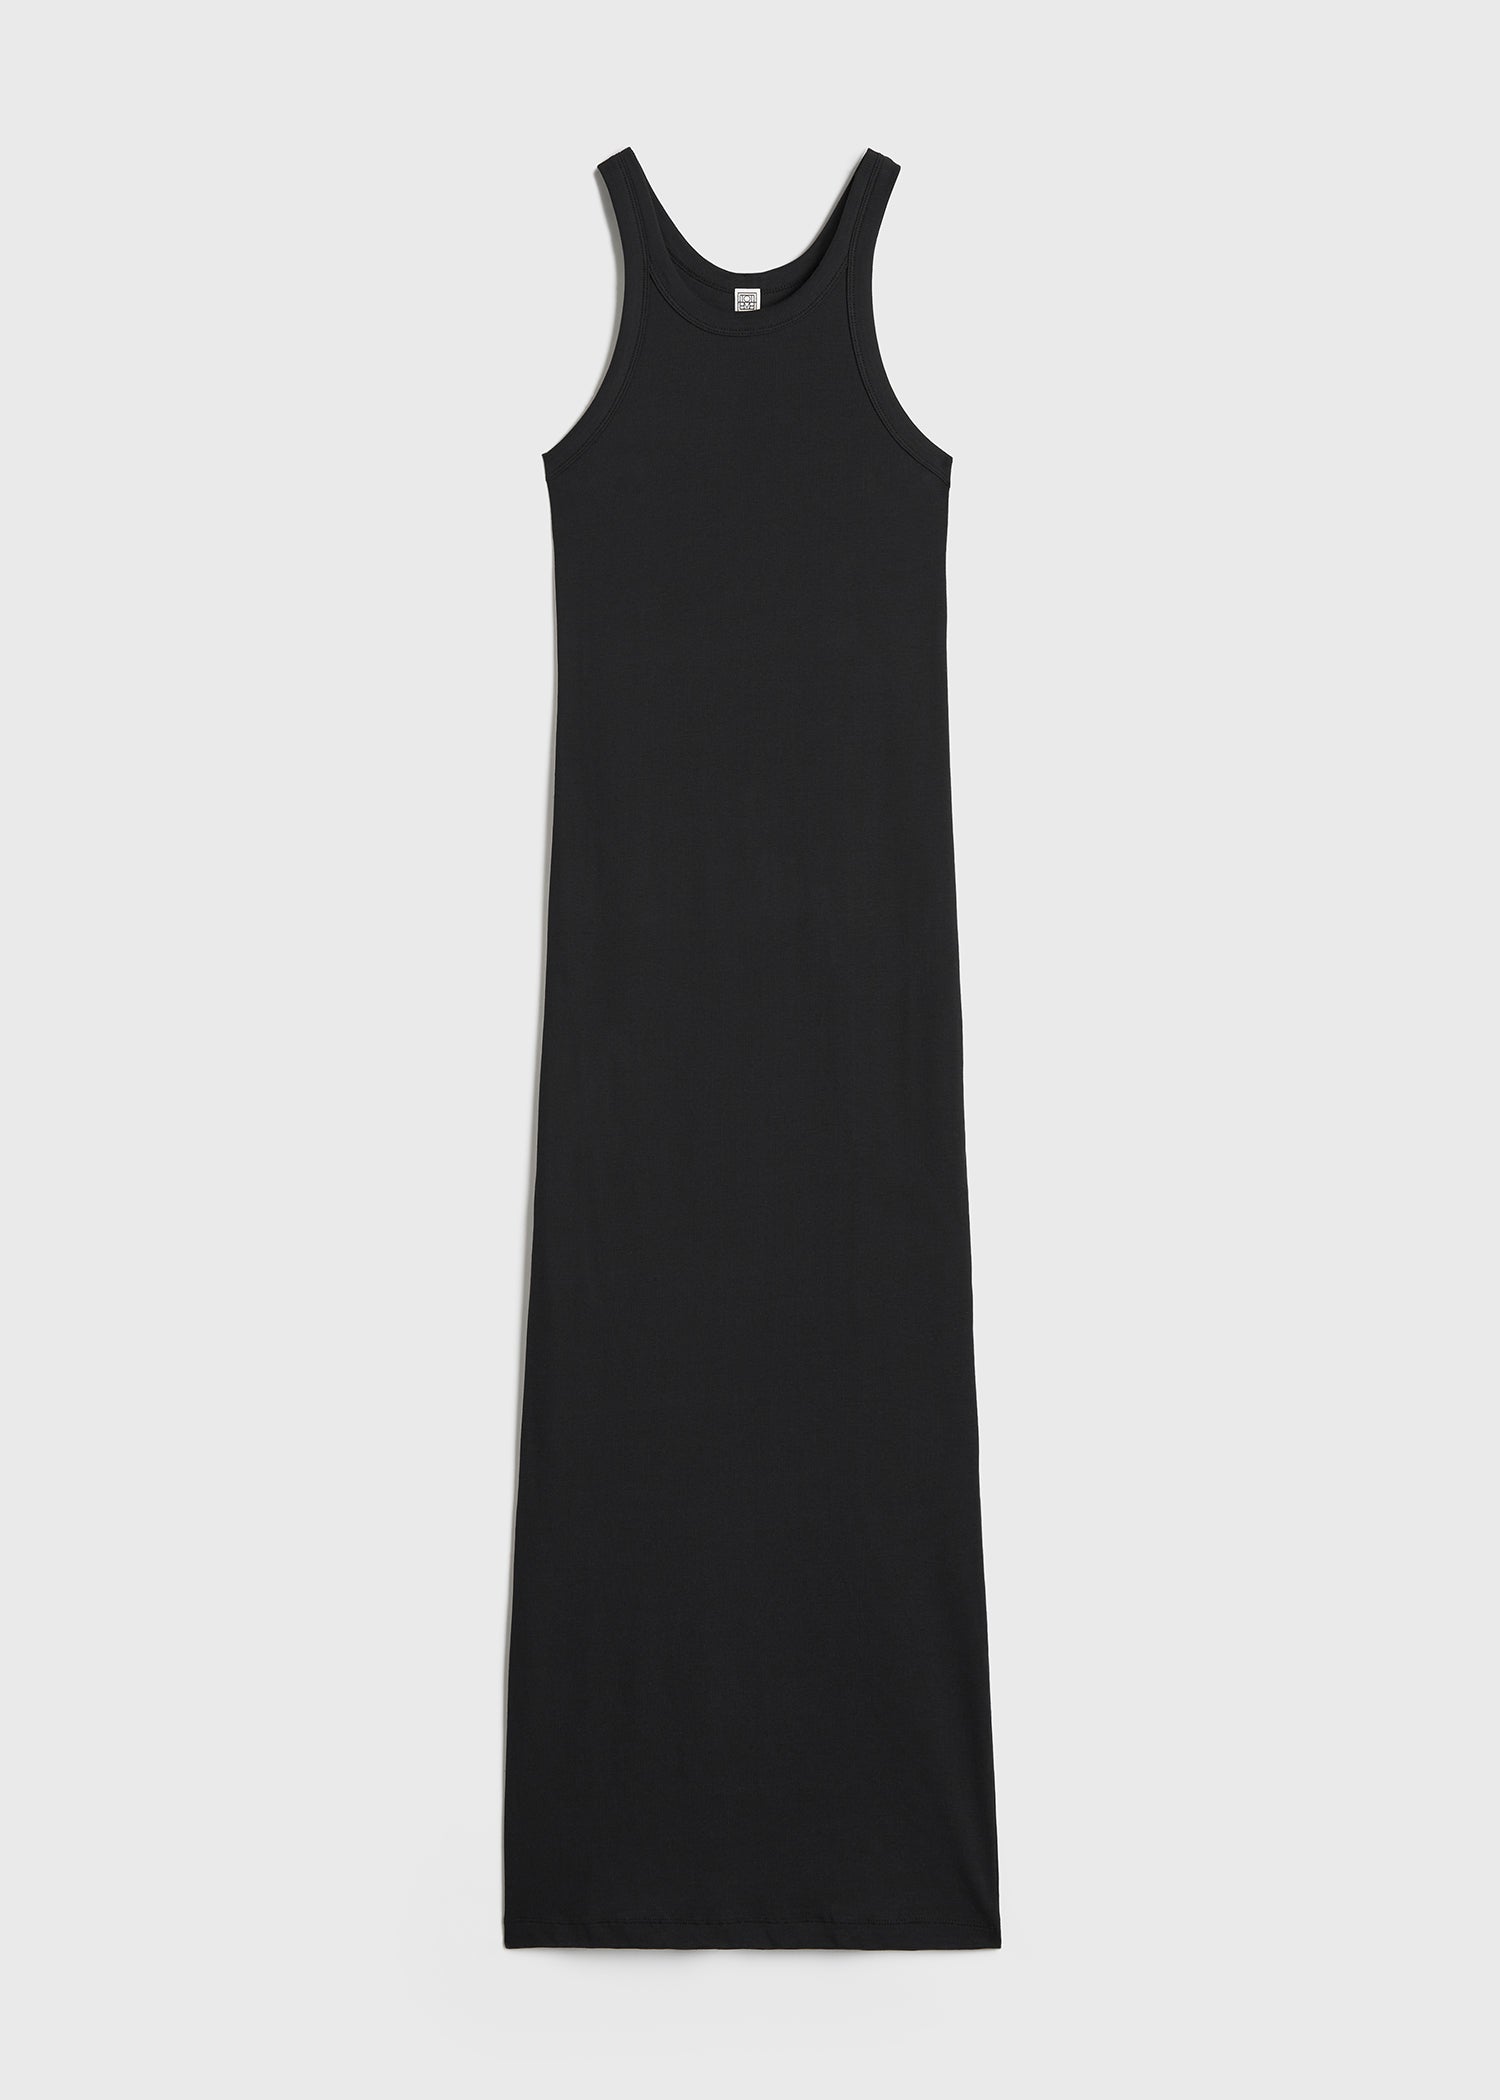 Shop Totême Toteme Curved Rib Tank Dress Black